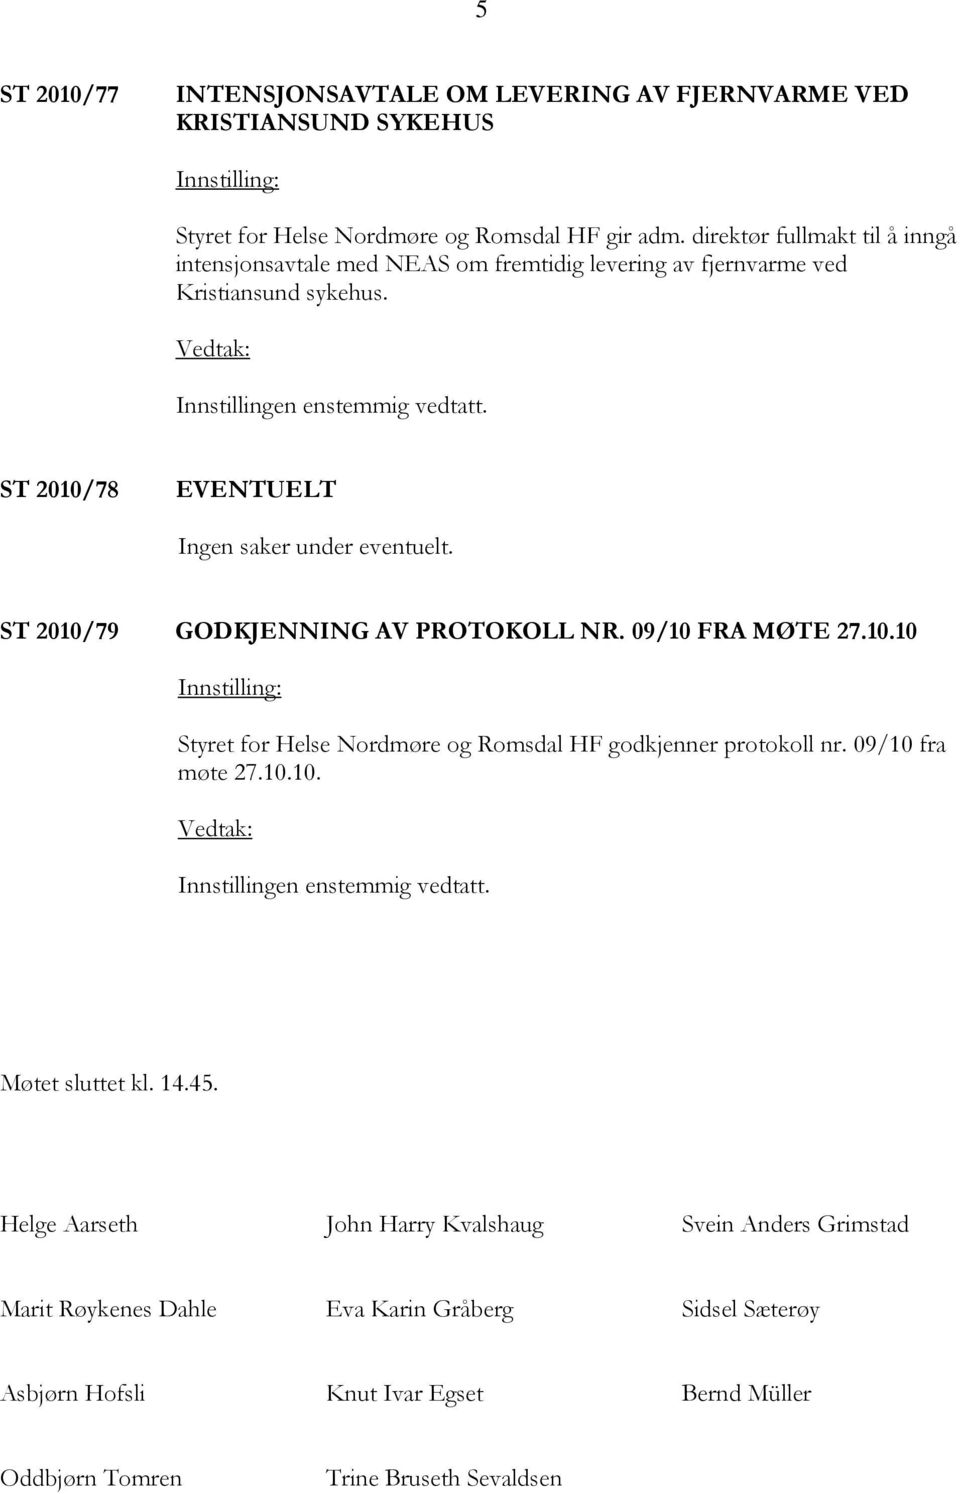 ST 2010/79 GODKJENNING AV PROTOKOLL NR. 09/10 FRA MØTE 27.10.10 Styret for Helse Nordmøre og Romsdal HF godkjenner protokoll nr. 09/10 fra møte 27.10.10. Møtet sluttet kl.